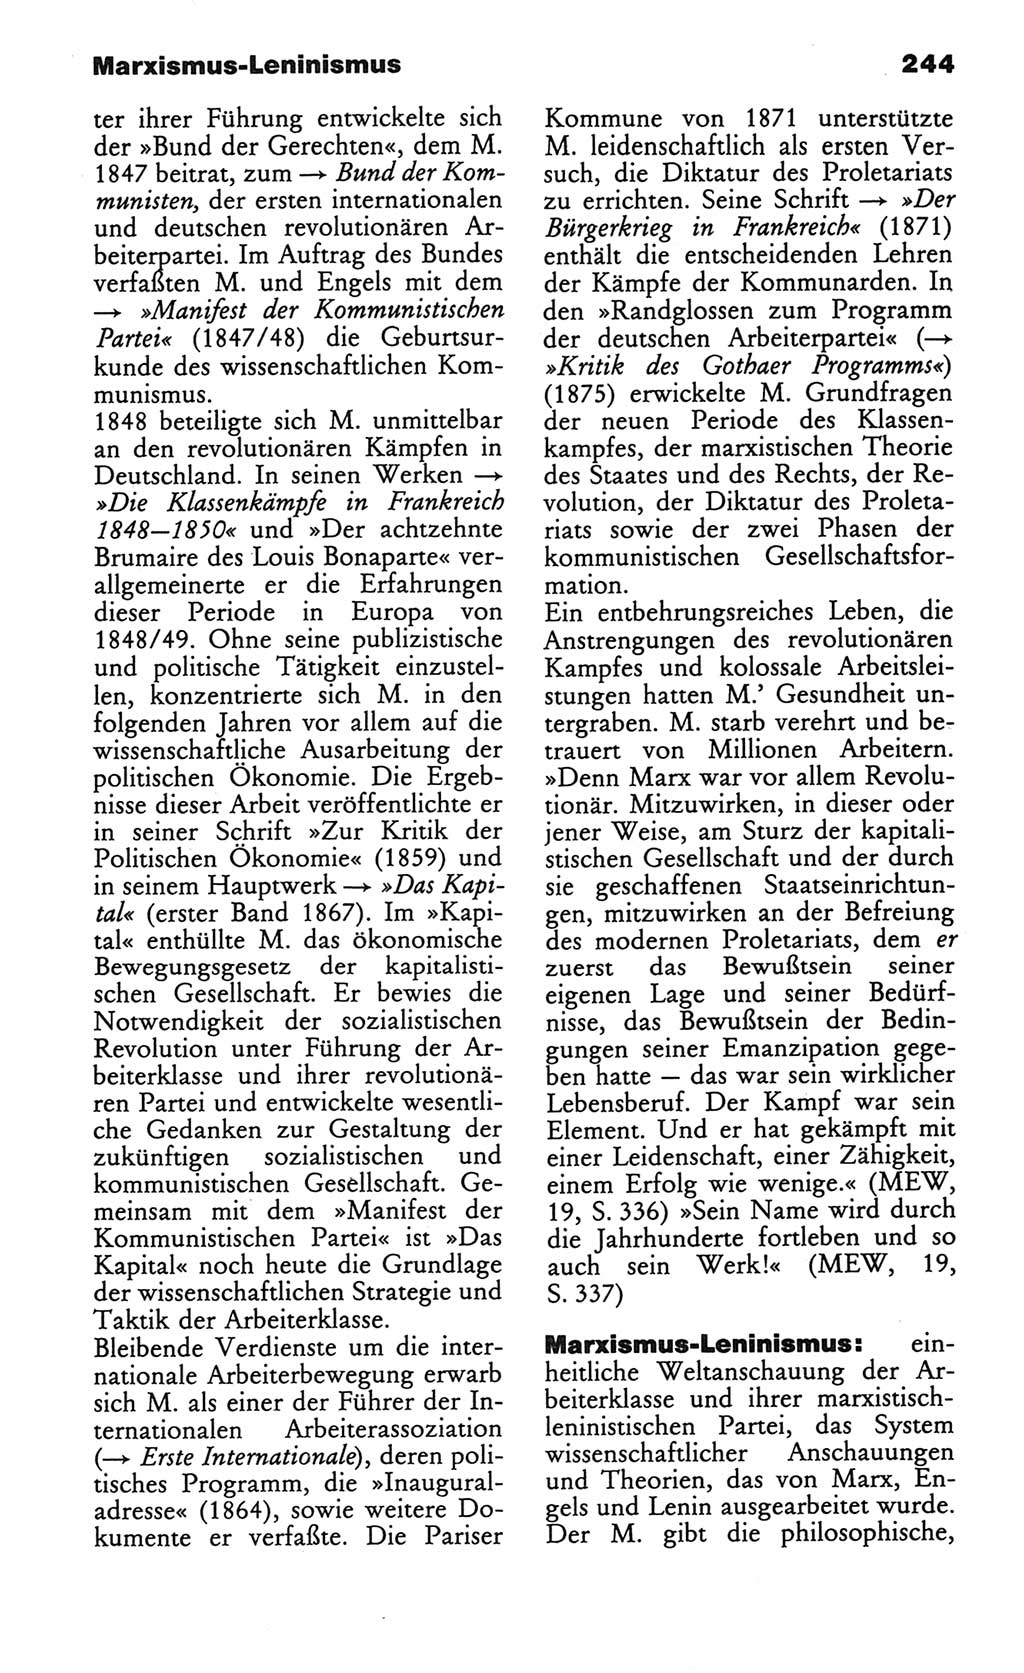 Wörterbuch des wissenschaftlichen Kommunismus [Deutsche Demokratische Republik (DDR)] 1982, Seite 244 (Wb. wiss. Komm. DDR 1982, S. 244)